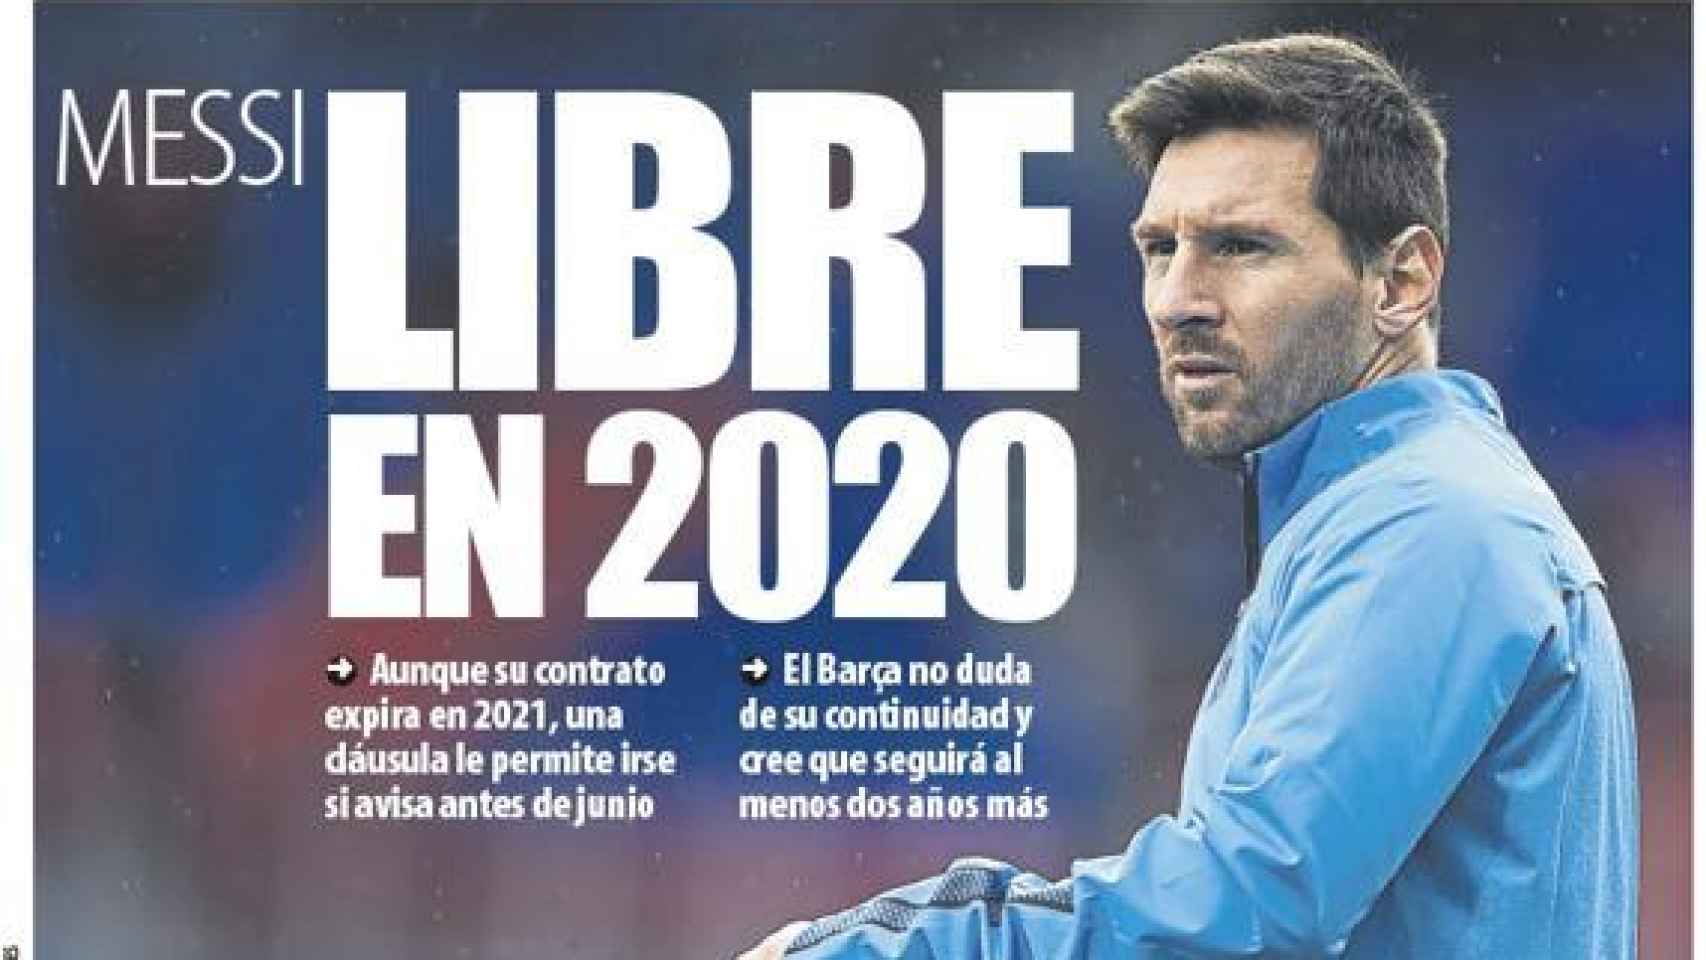 La portada del diario Mundo Deportivo (06/09/2019)